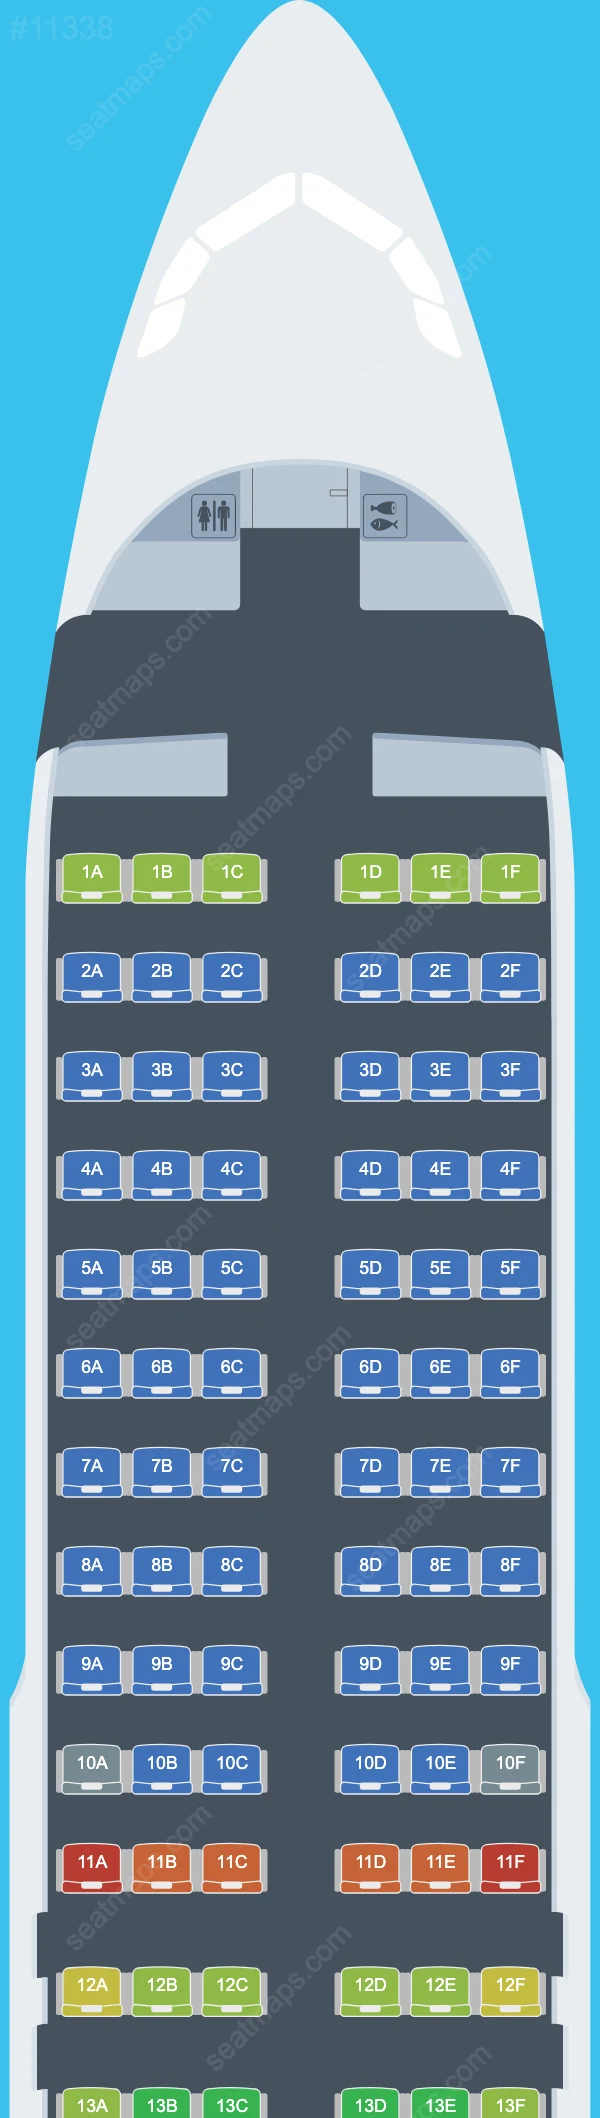 Air Serbia Airbus A320 Seat Maps A320-200 V.2